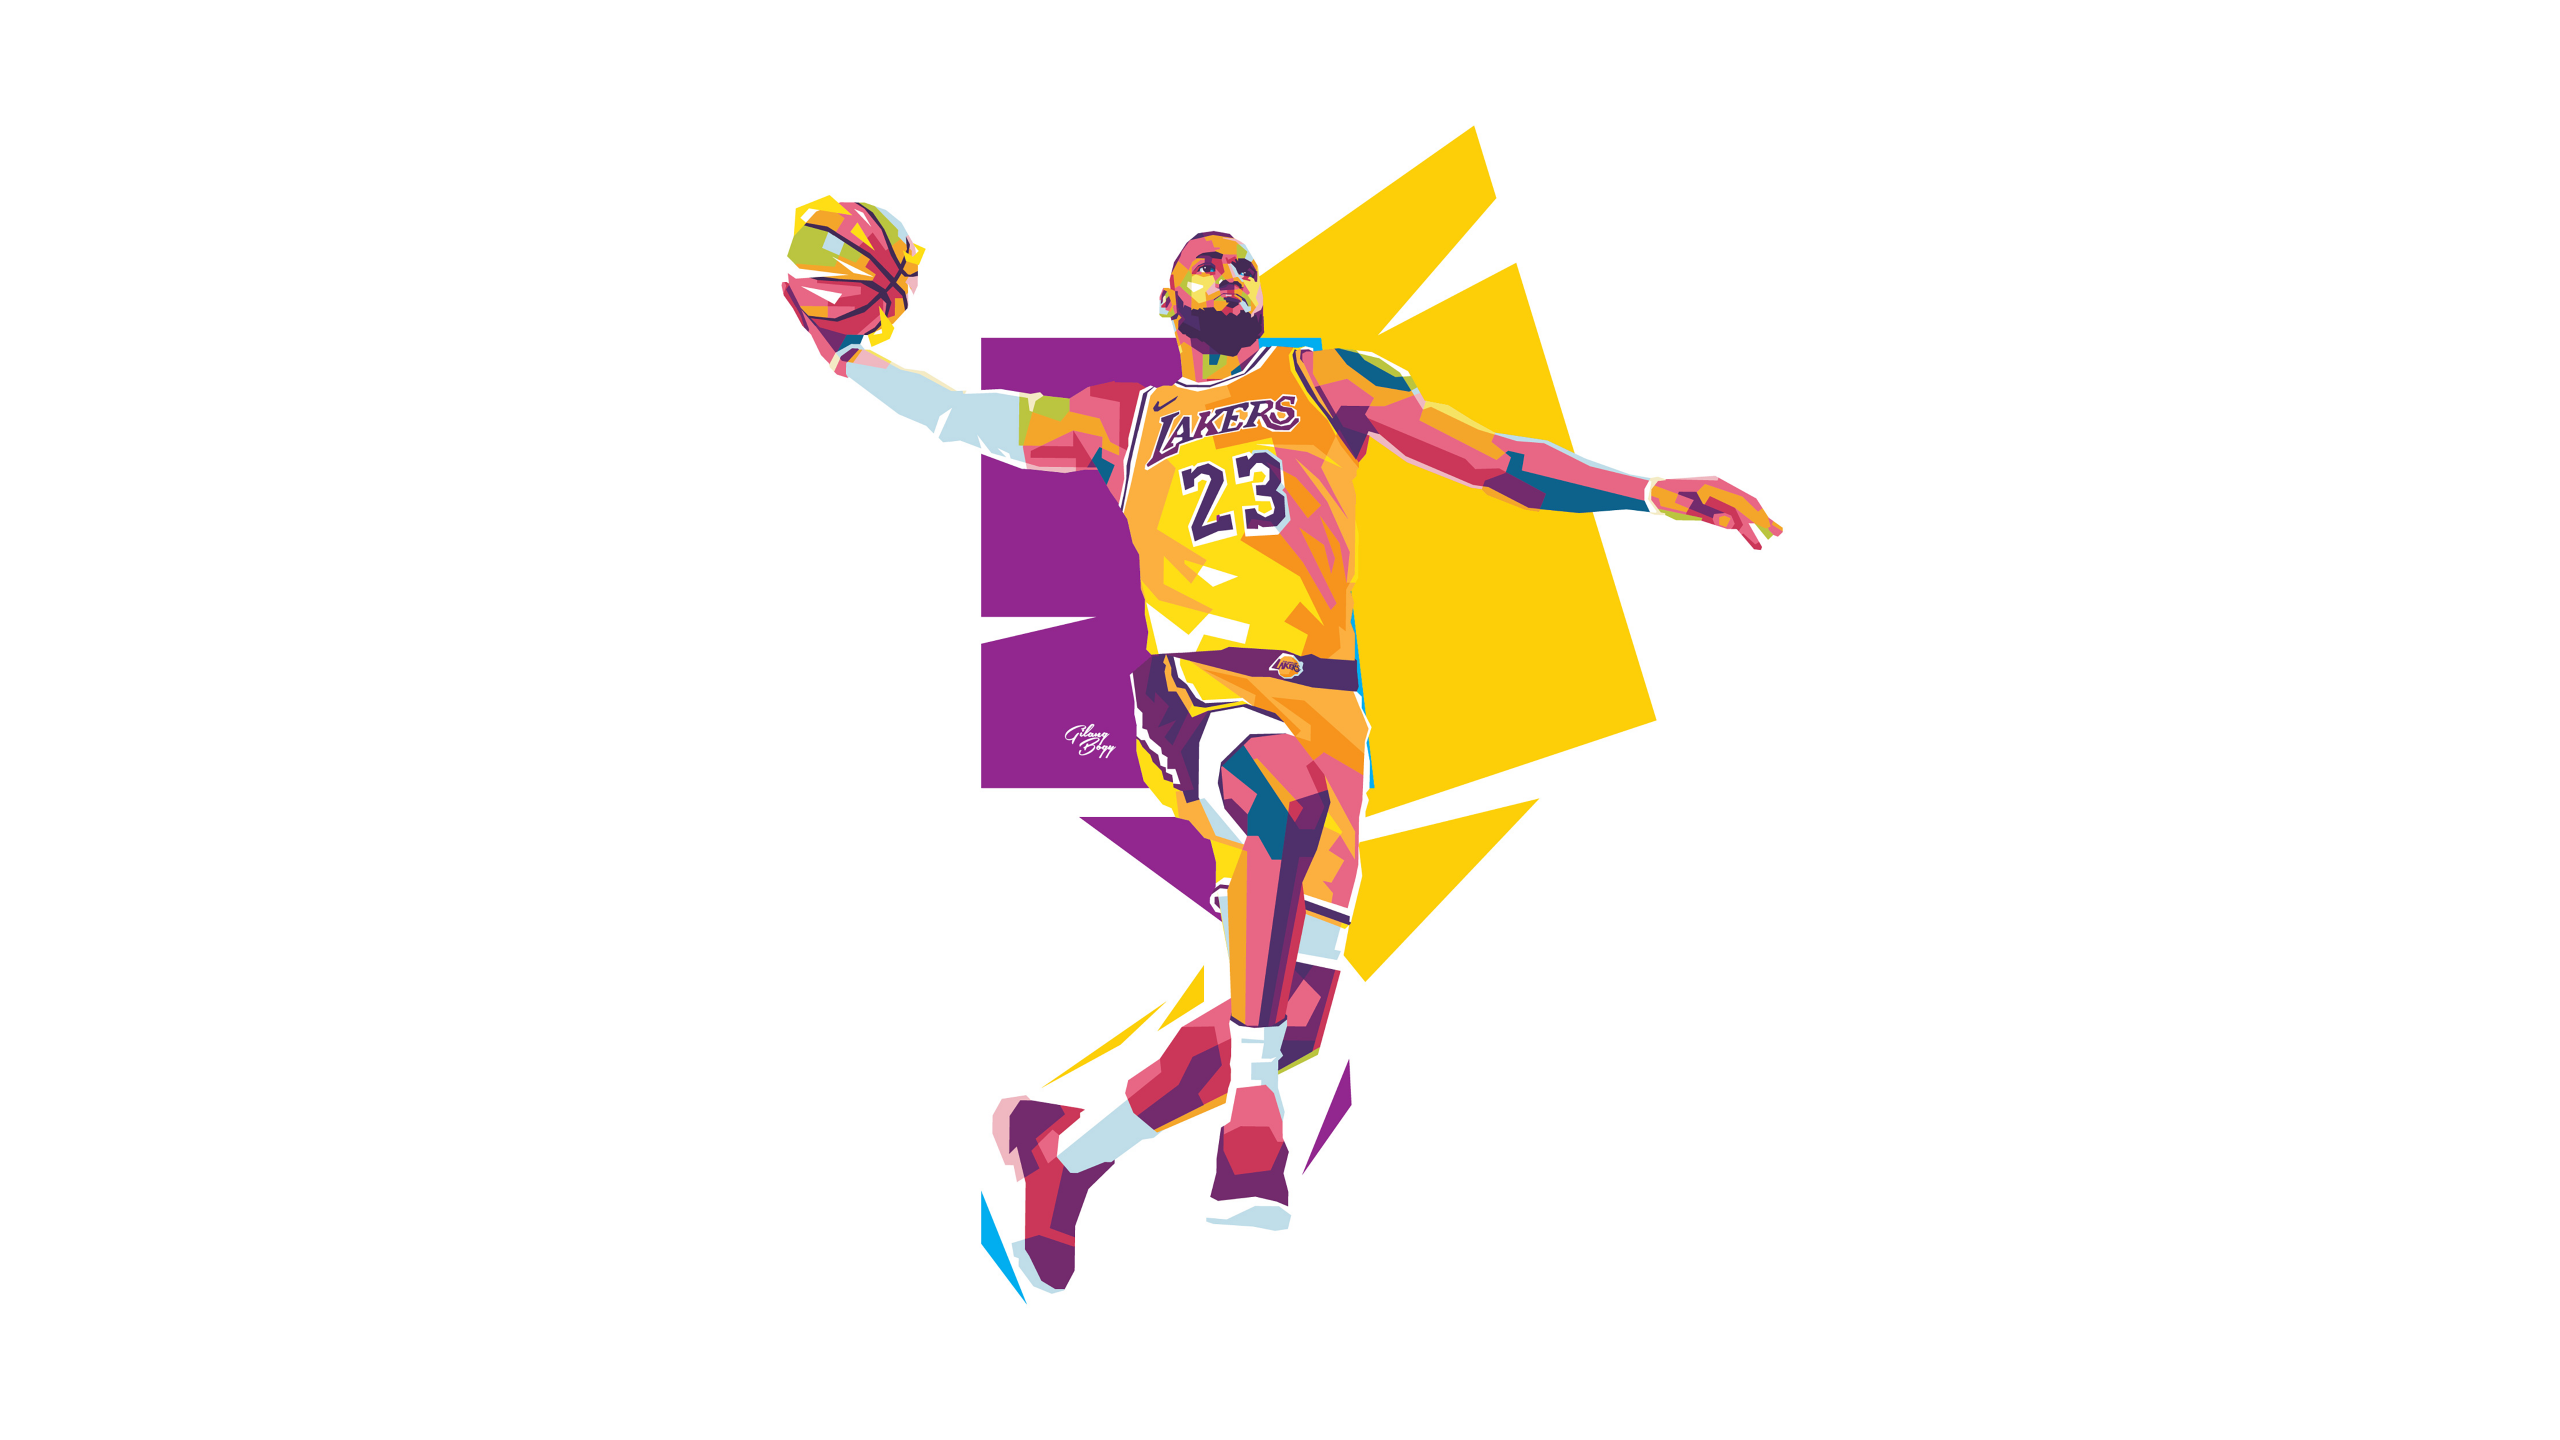 LeBron James Wallpaper  Fotografia de basquete Fotografia de esporte  Desenhos de basquete